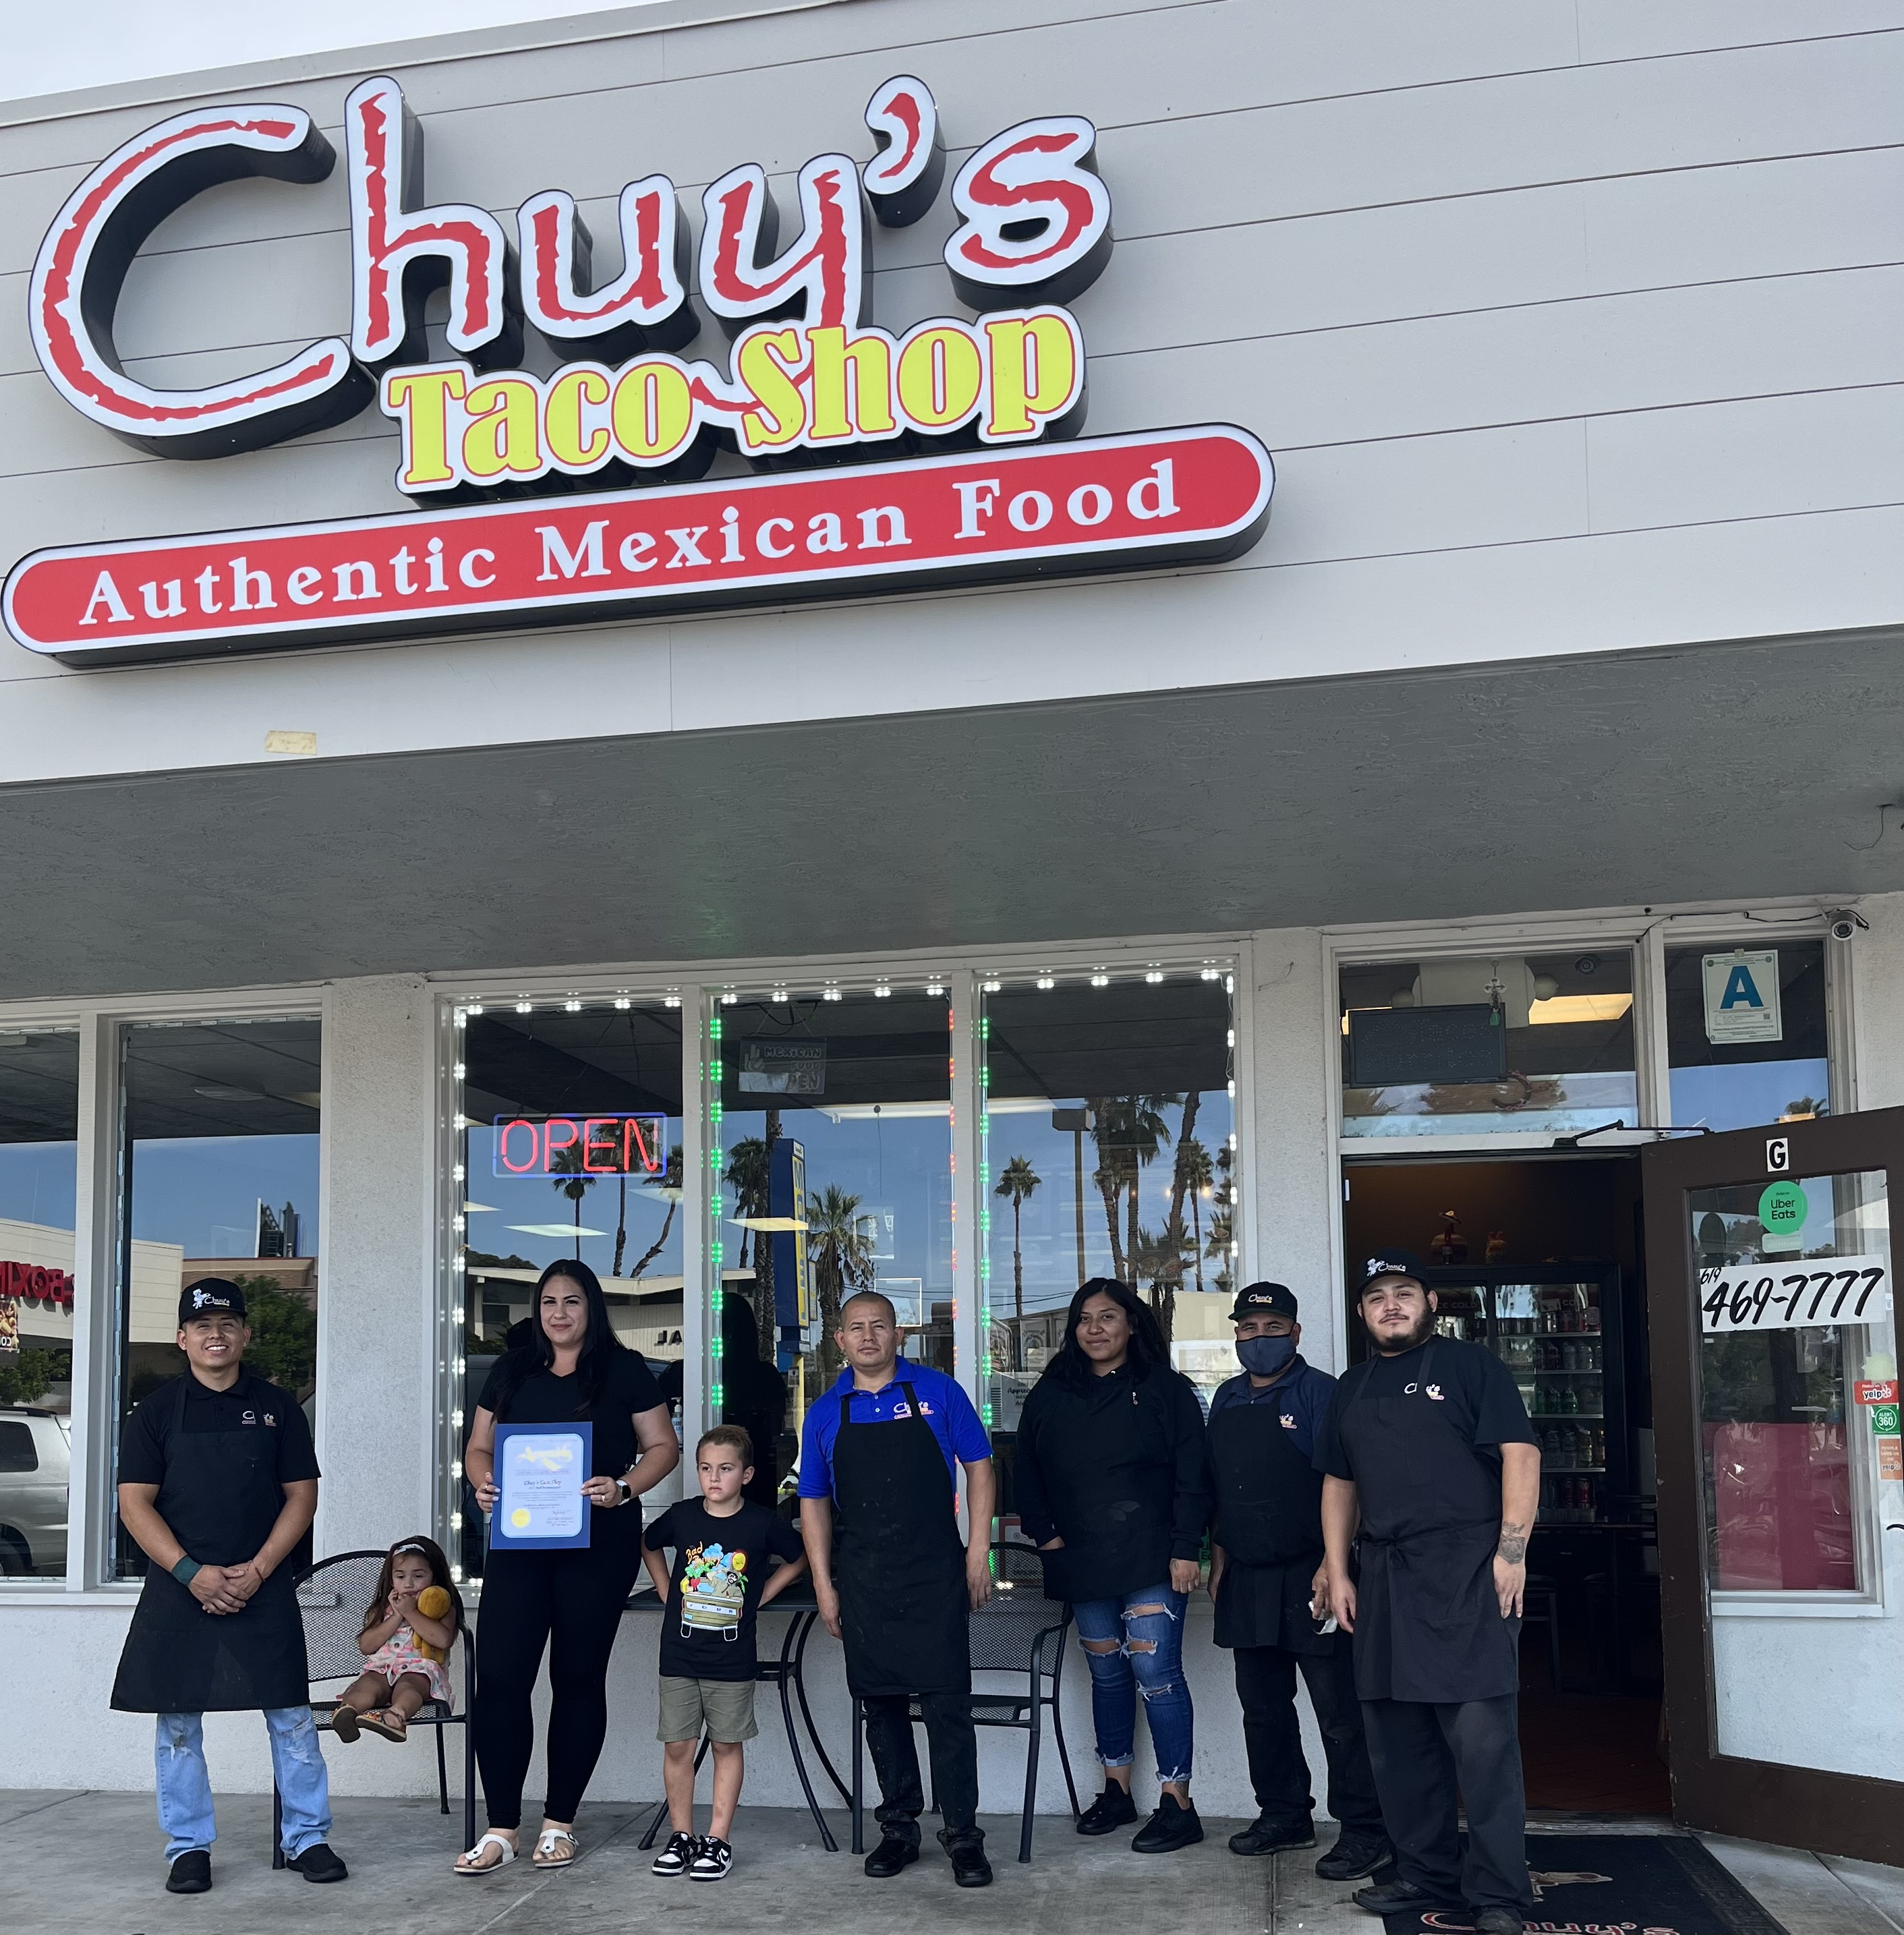 Chuy's Taco Shop